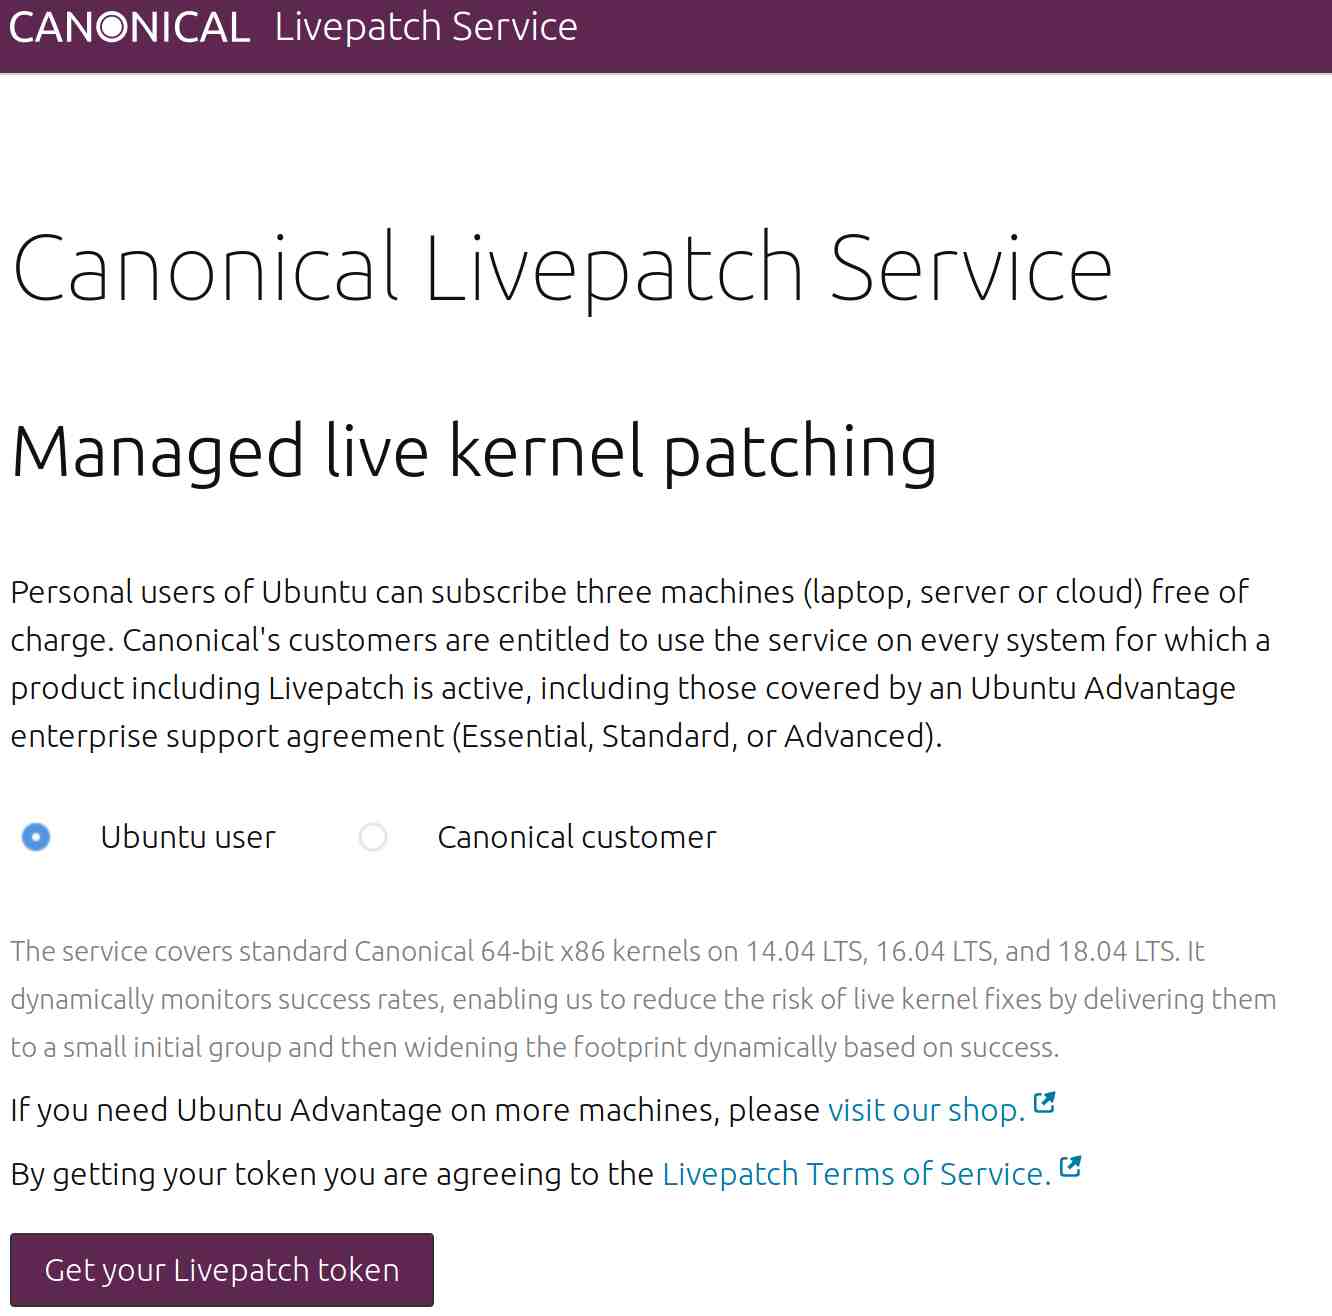 在 Ubuntu LTS 系统上启用 Canonical 内核实时补丁服务的方法介绍在 Ubuntu LTS 系统上启用 Canonical 内核实时补丁服务的方法介绍